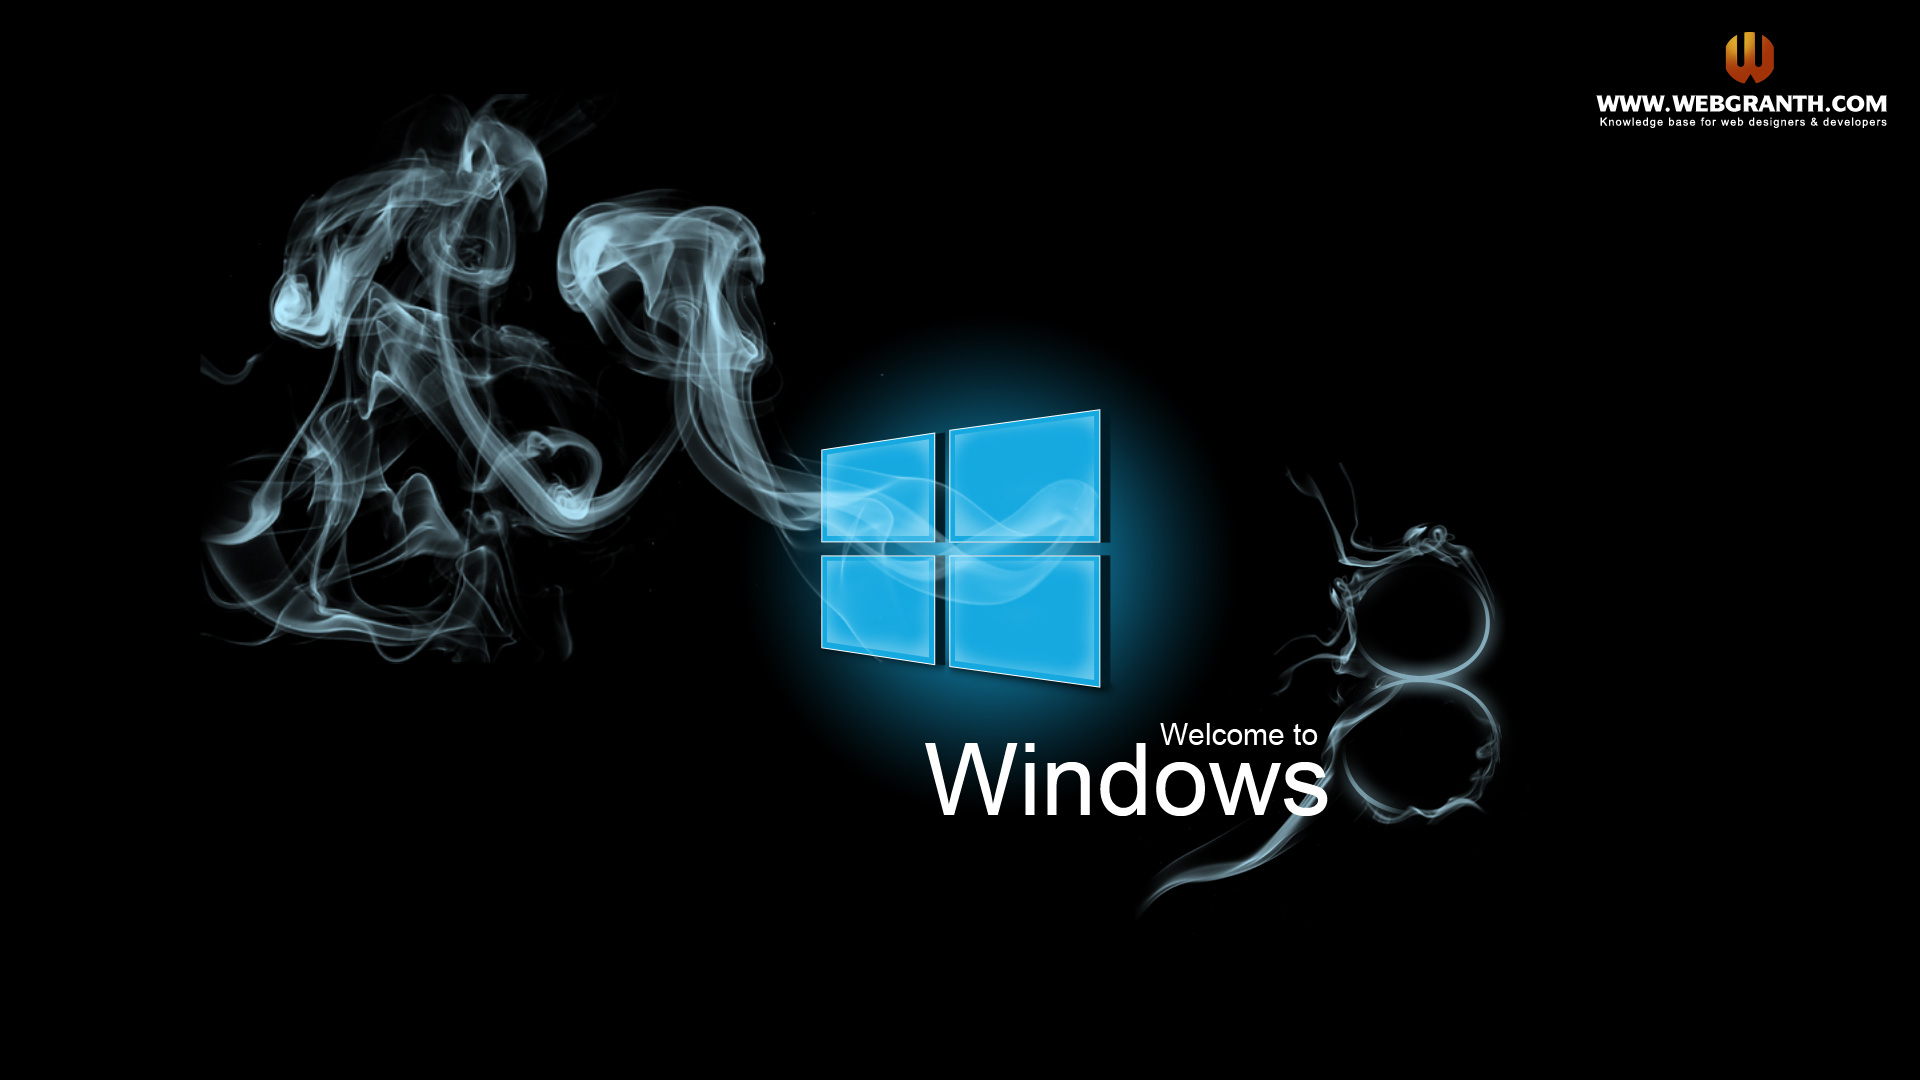 Tạo không gian làm việc đầy sáng tạo với hình nền Windows 8 được thiết kế đẹp mắt. Tải ngay những hình nền tuyệt đẹp và cập nhật trang trí cho máy tính của bạn.